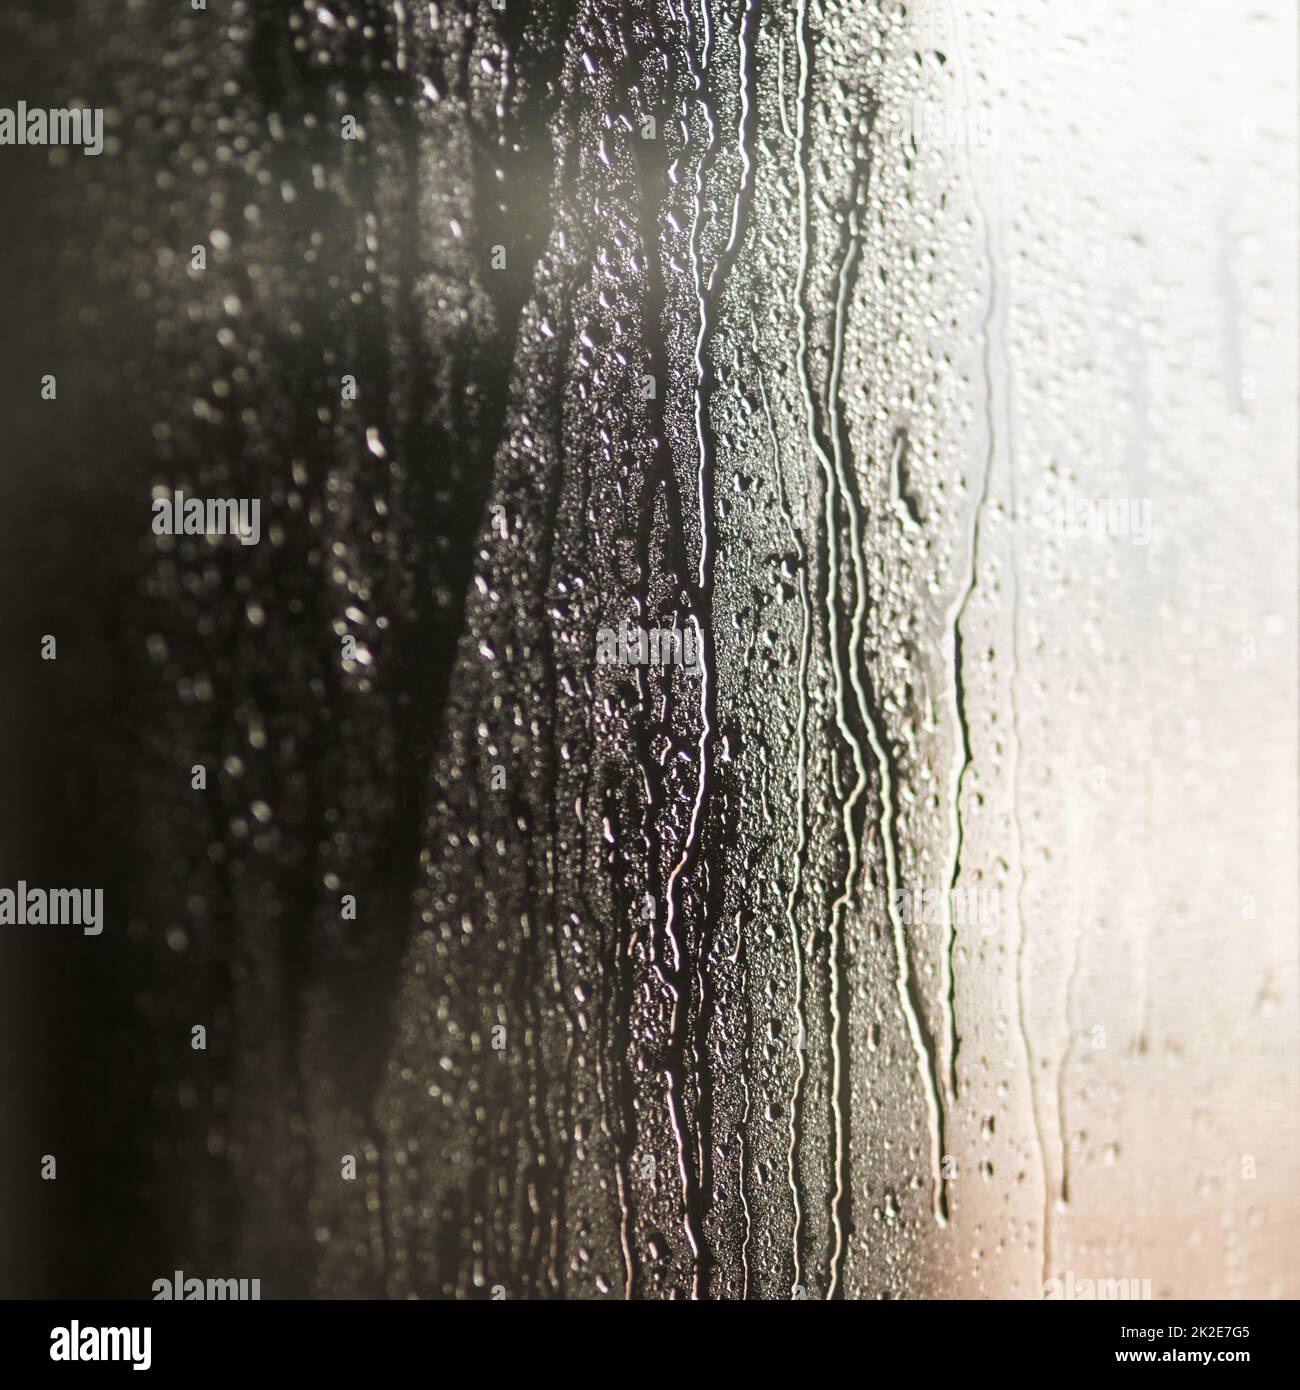 Rivuletti e pioggia. Getto di gocce d'acqua su una superficie liscia. Foto Stock